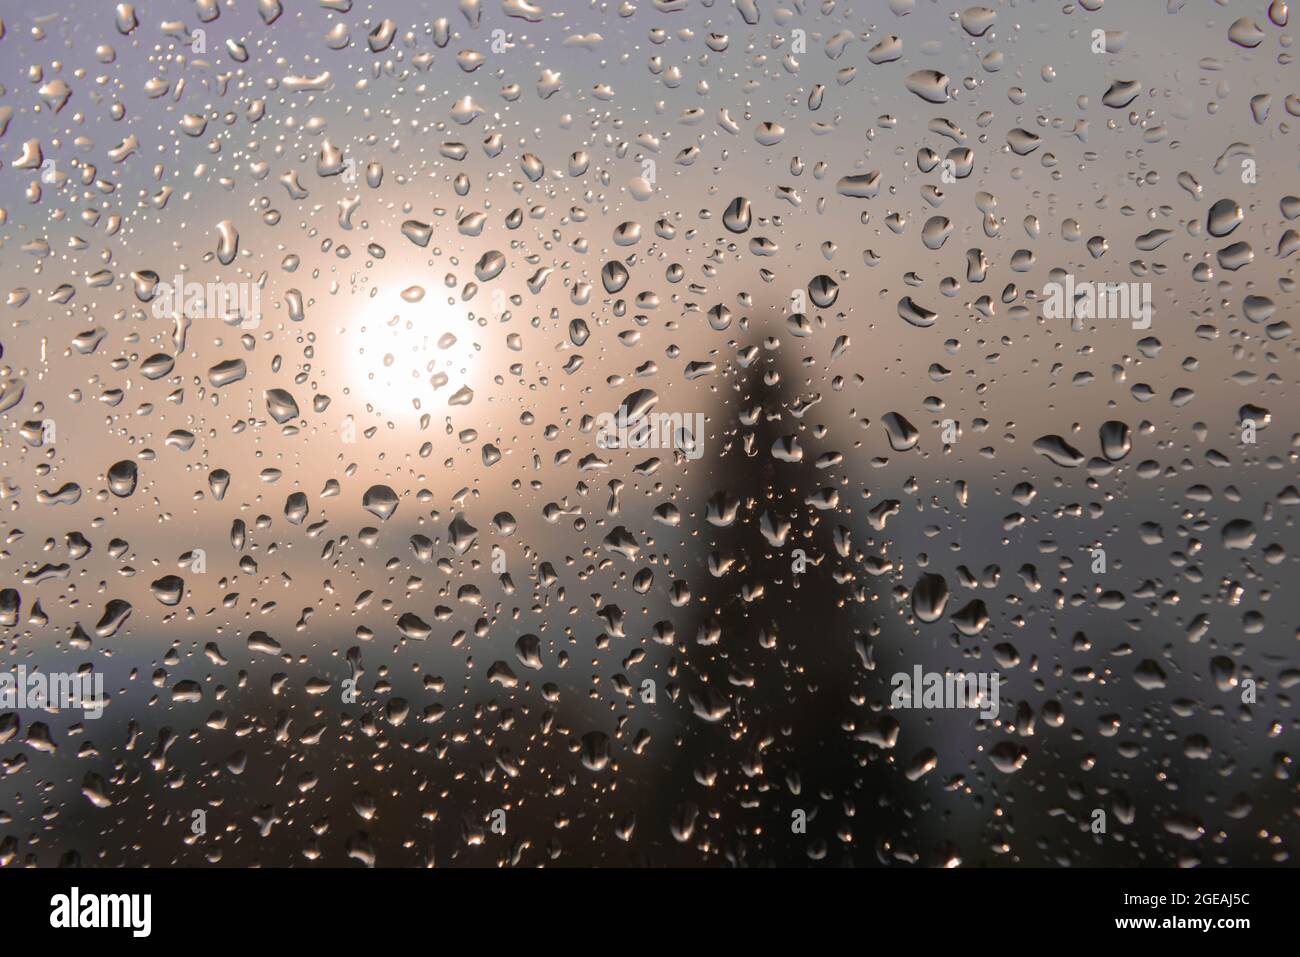 Vista dalla finestra dall'interno. Il vetro della finestra è coperto da gocce d'acqua derivanti dalla pioggia che cade dall'esterno. Il paesaggio è indistinto, Foto Stock